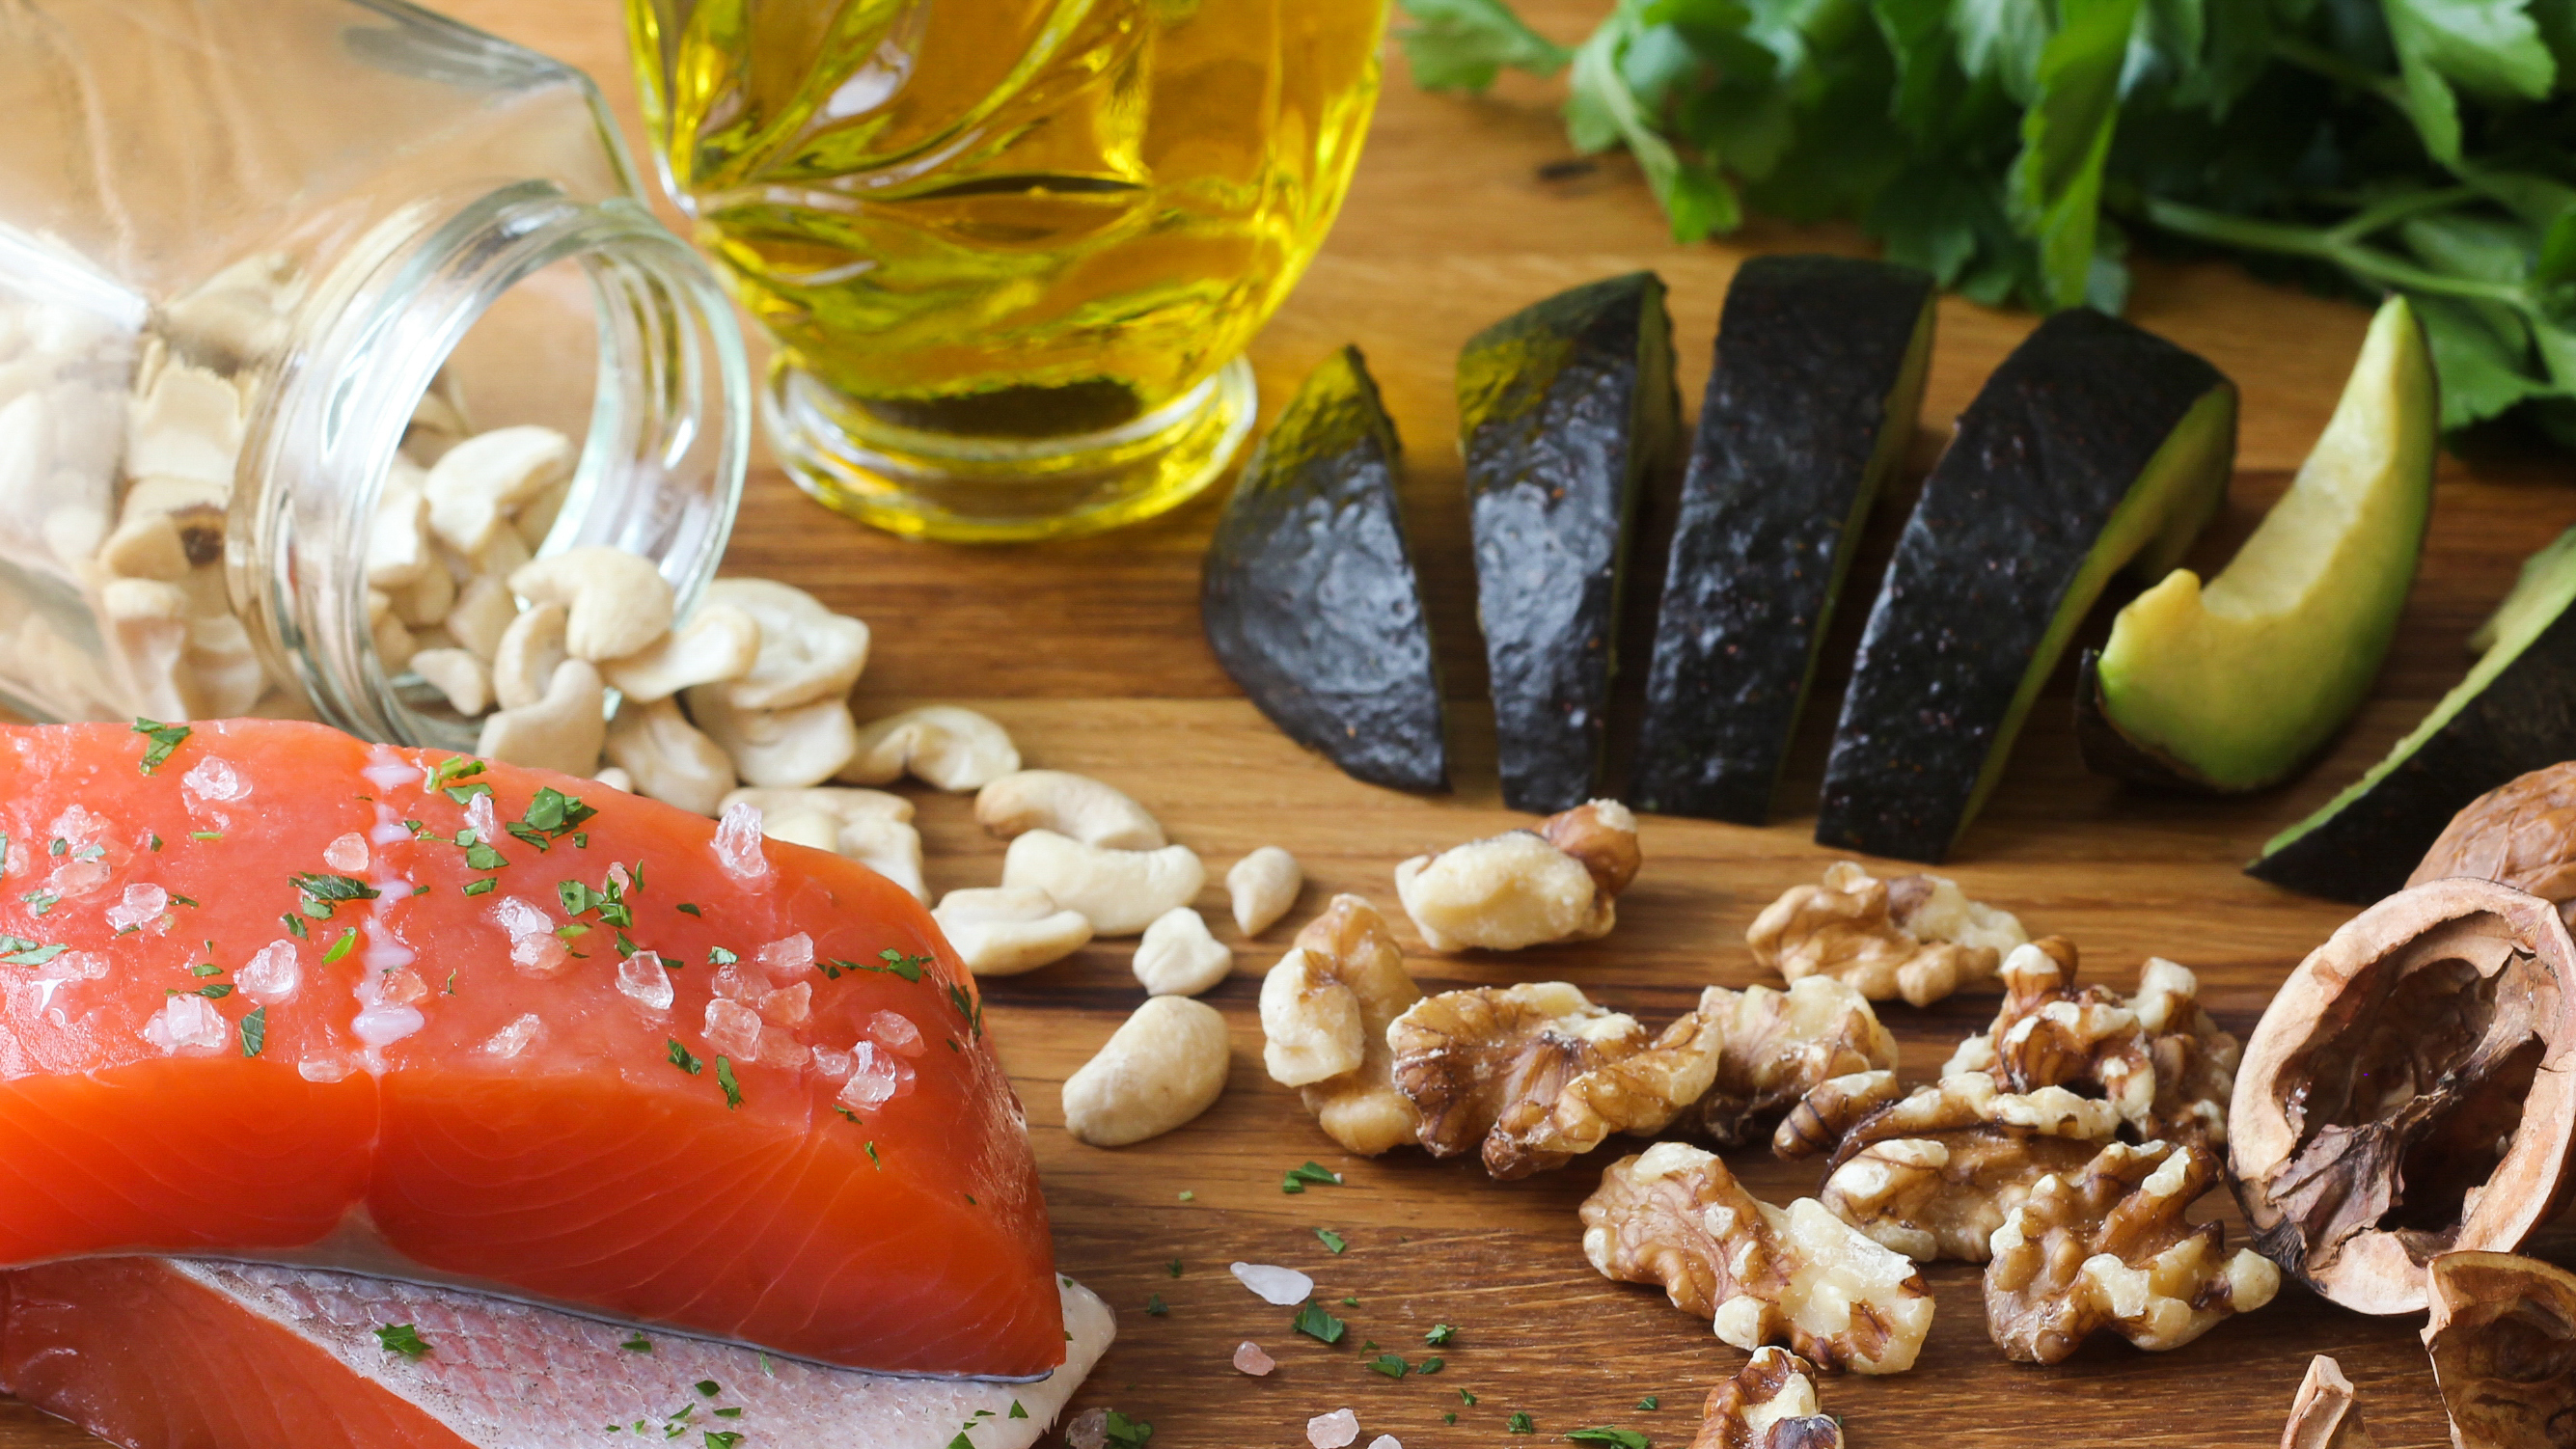 El pescado de aguas profundas, la palta, los frutos secos y el aceite de oliva son algunas de las fuentes de Omega 3 incluidas en la dieta mediterránea (Getty)